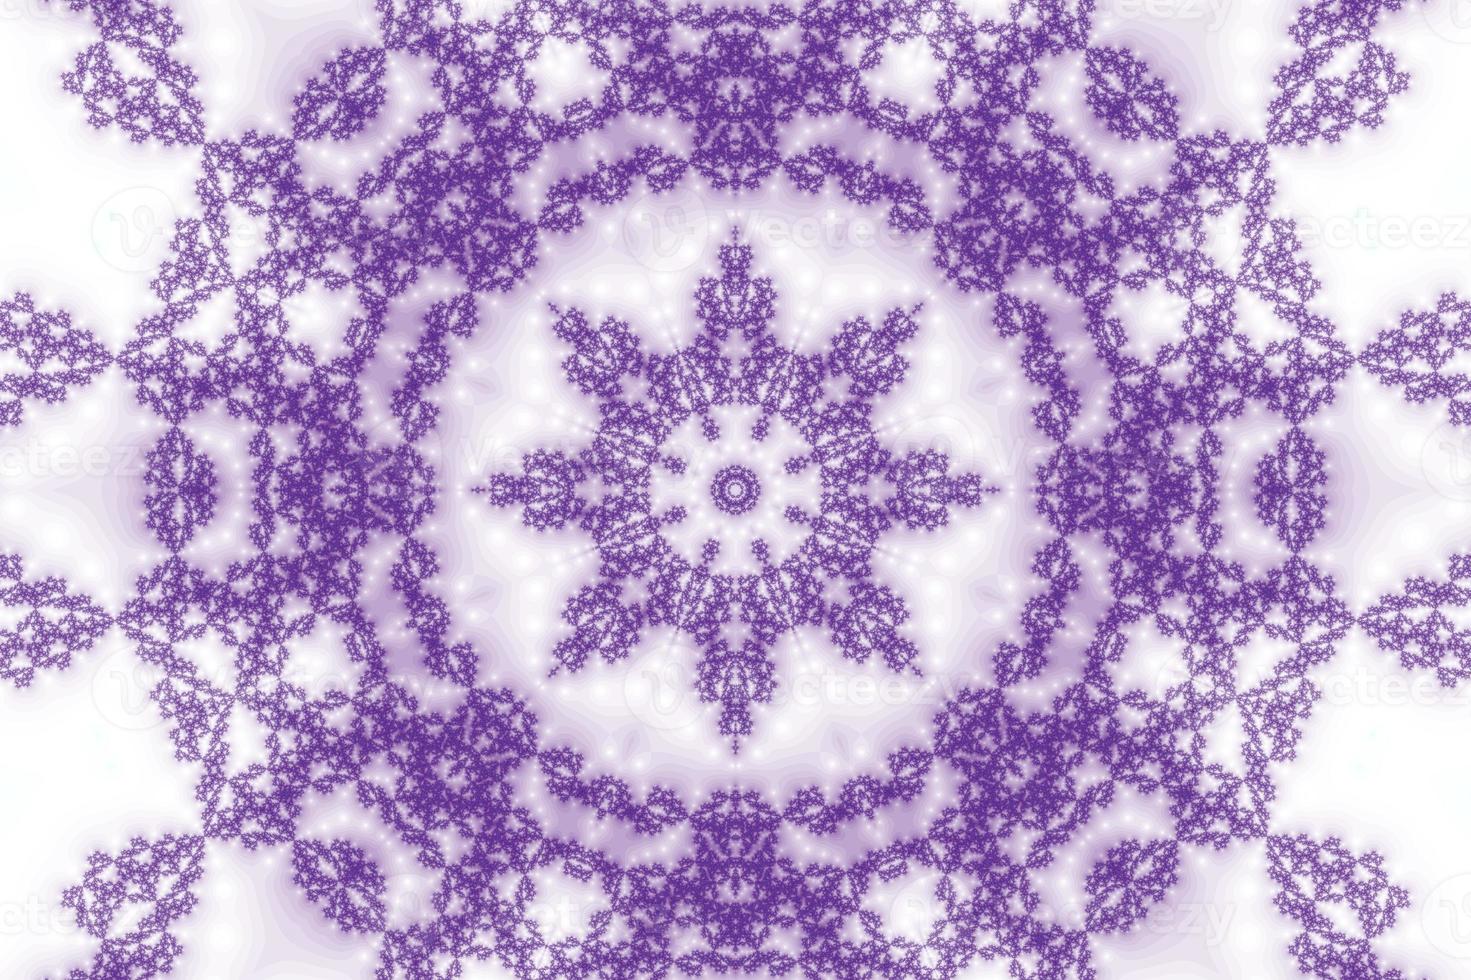 3d-illustrazione di un' kaleidoskop Ingrandisci in il infinito matematico mandelbrot impostato frattale. foto